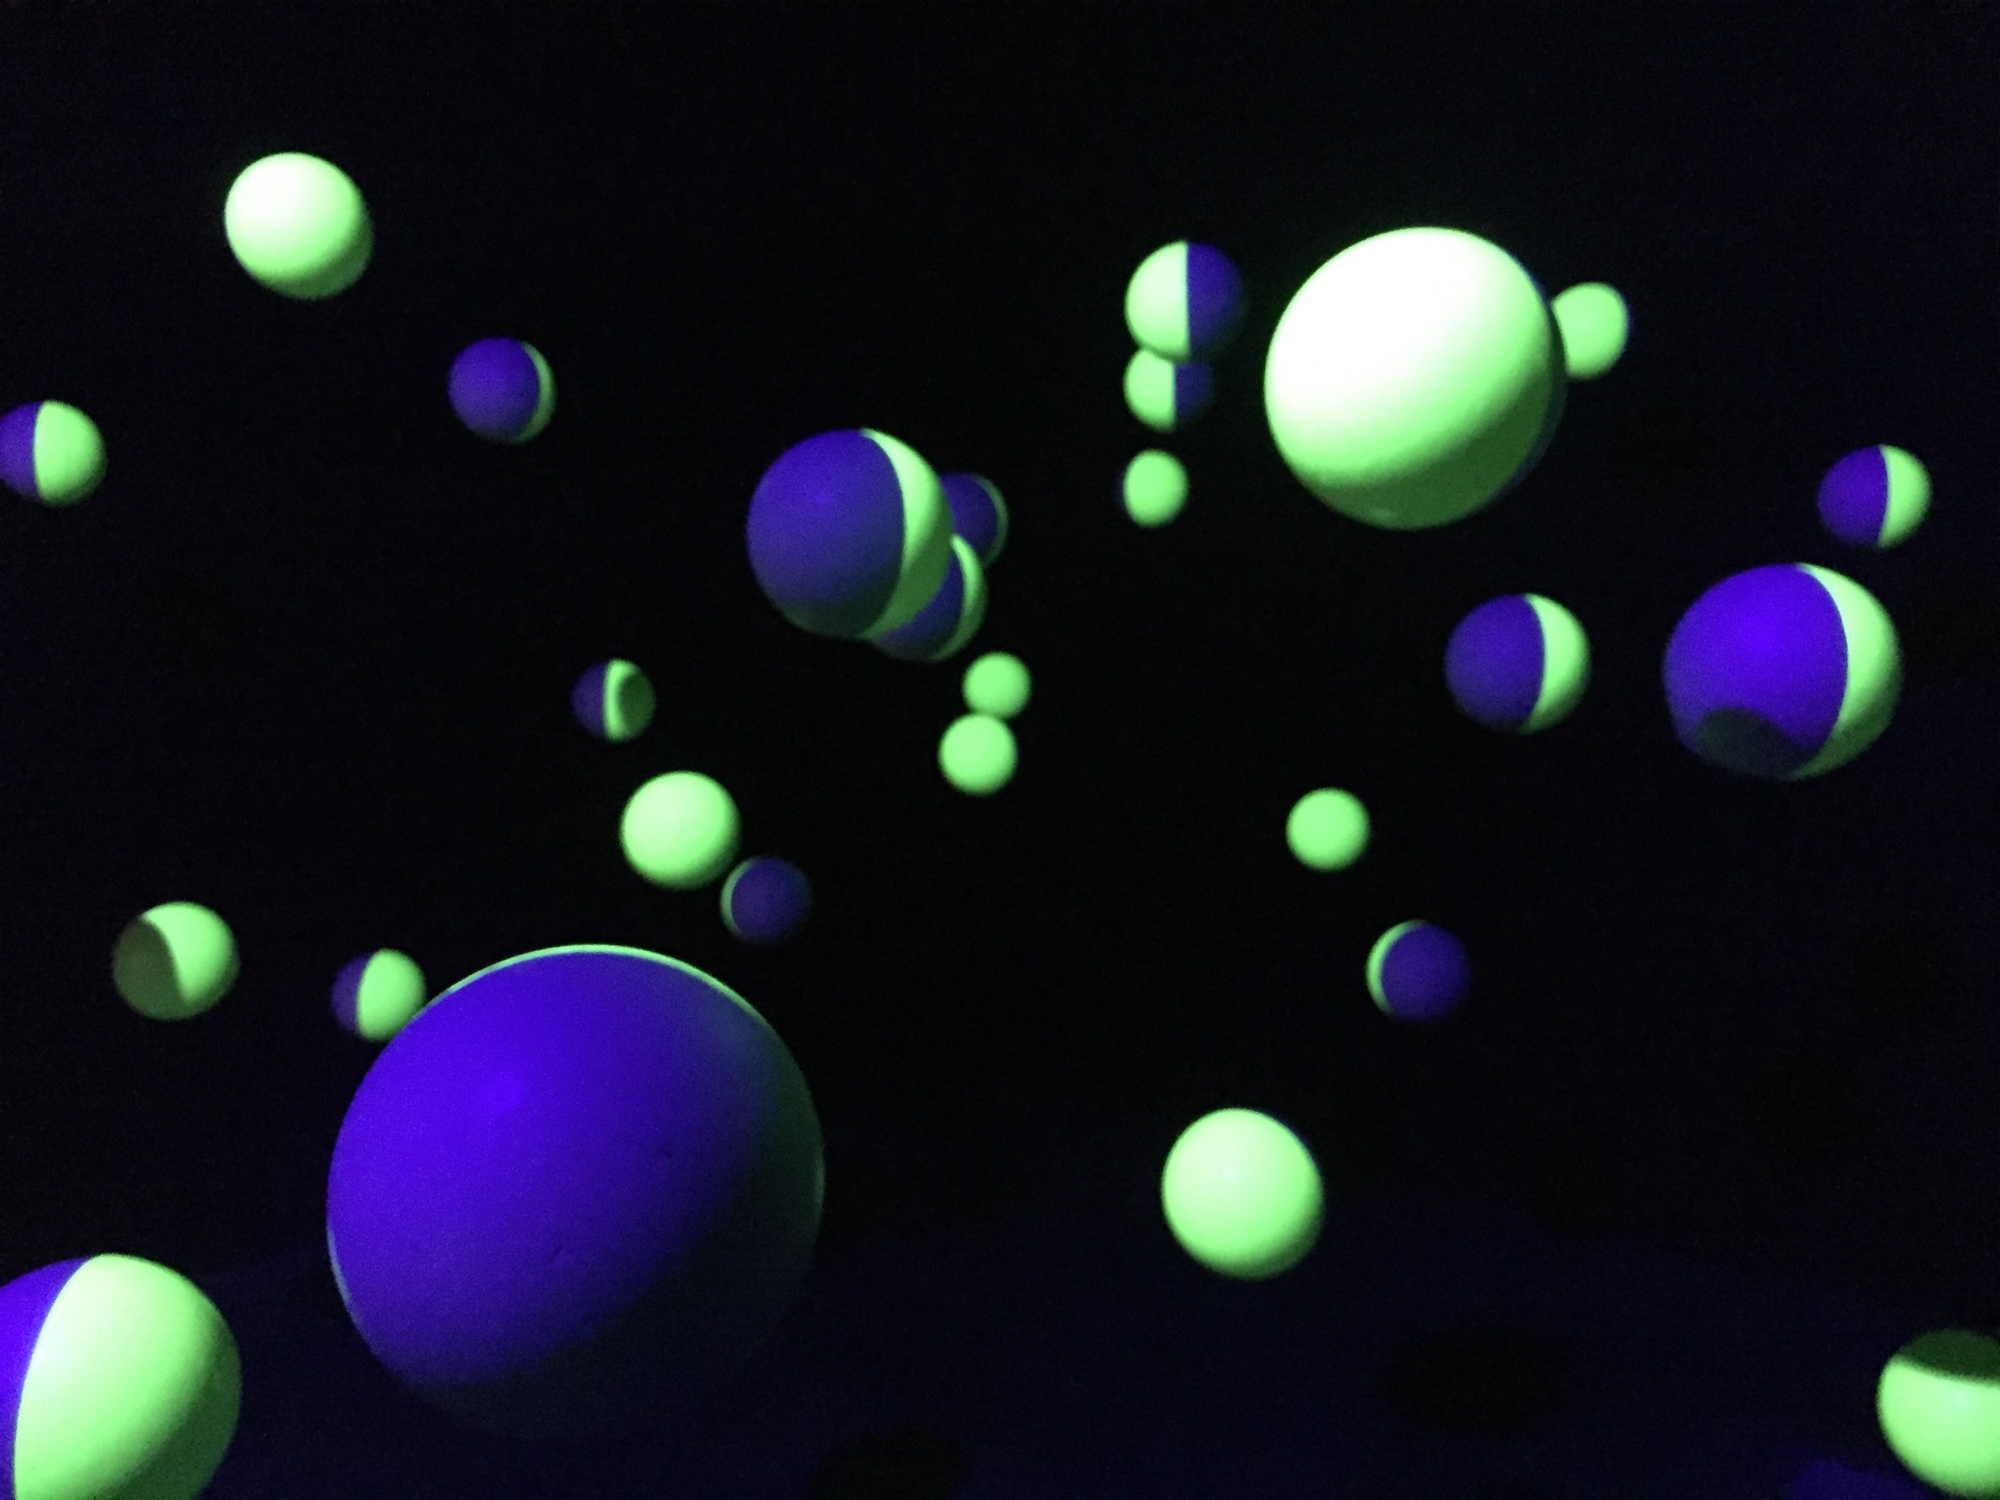 Installation mit von der Decke hängenden Styroporkugeln in einem dunklen Raum, die Kugeln sind je zur Hälfte mit verschiedenen UV-empfindlichen Farben bemalt